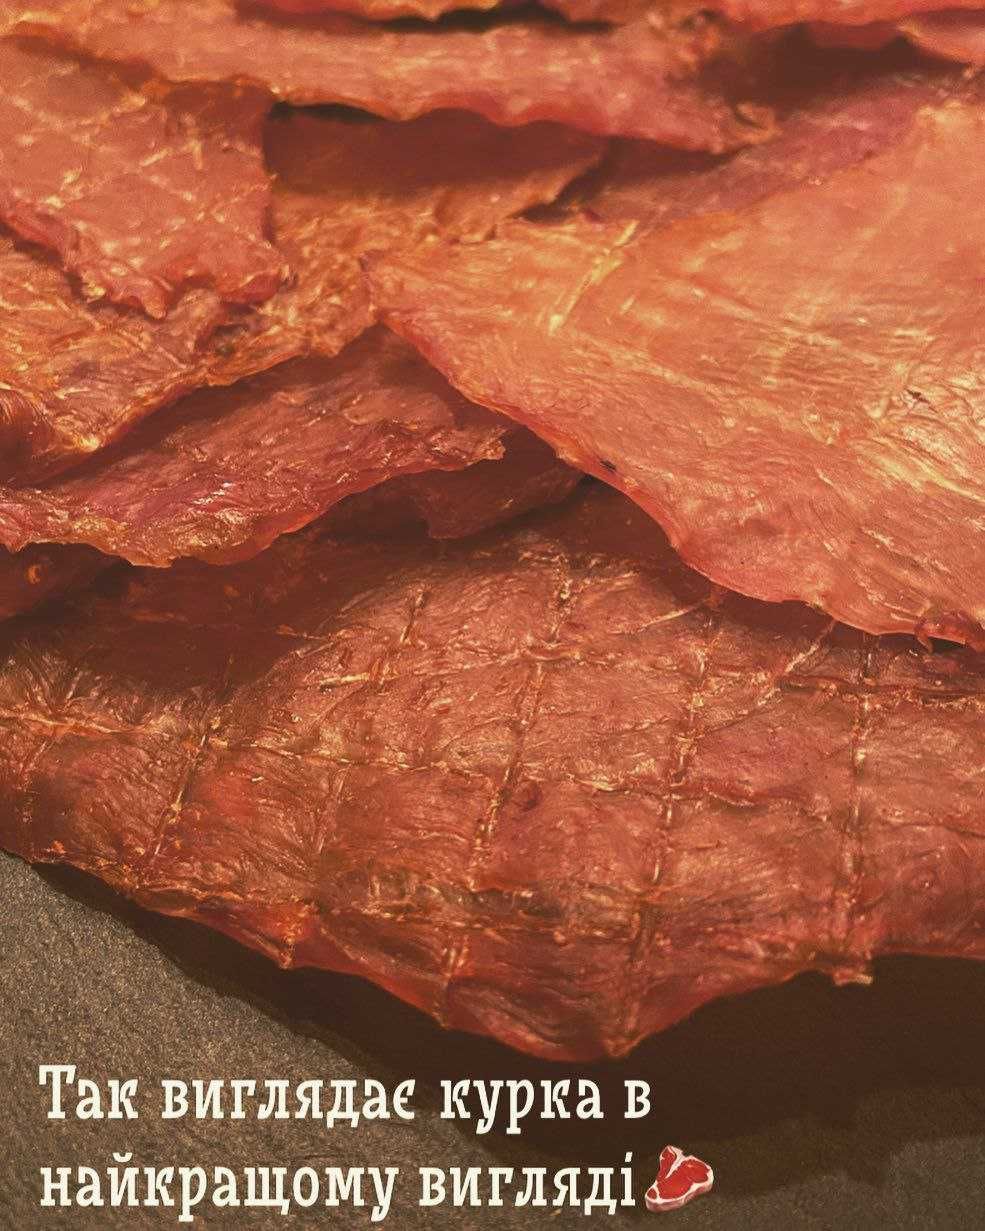 Уникальные ароматы в каждом кусочке: джерки мясные и вяленое мясо. Жми